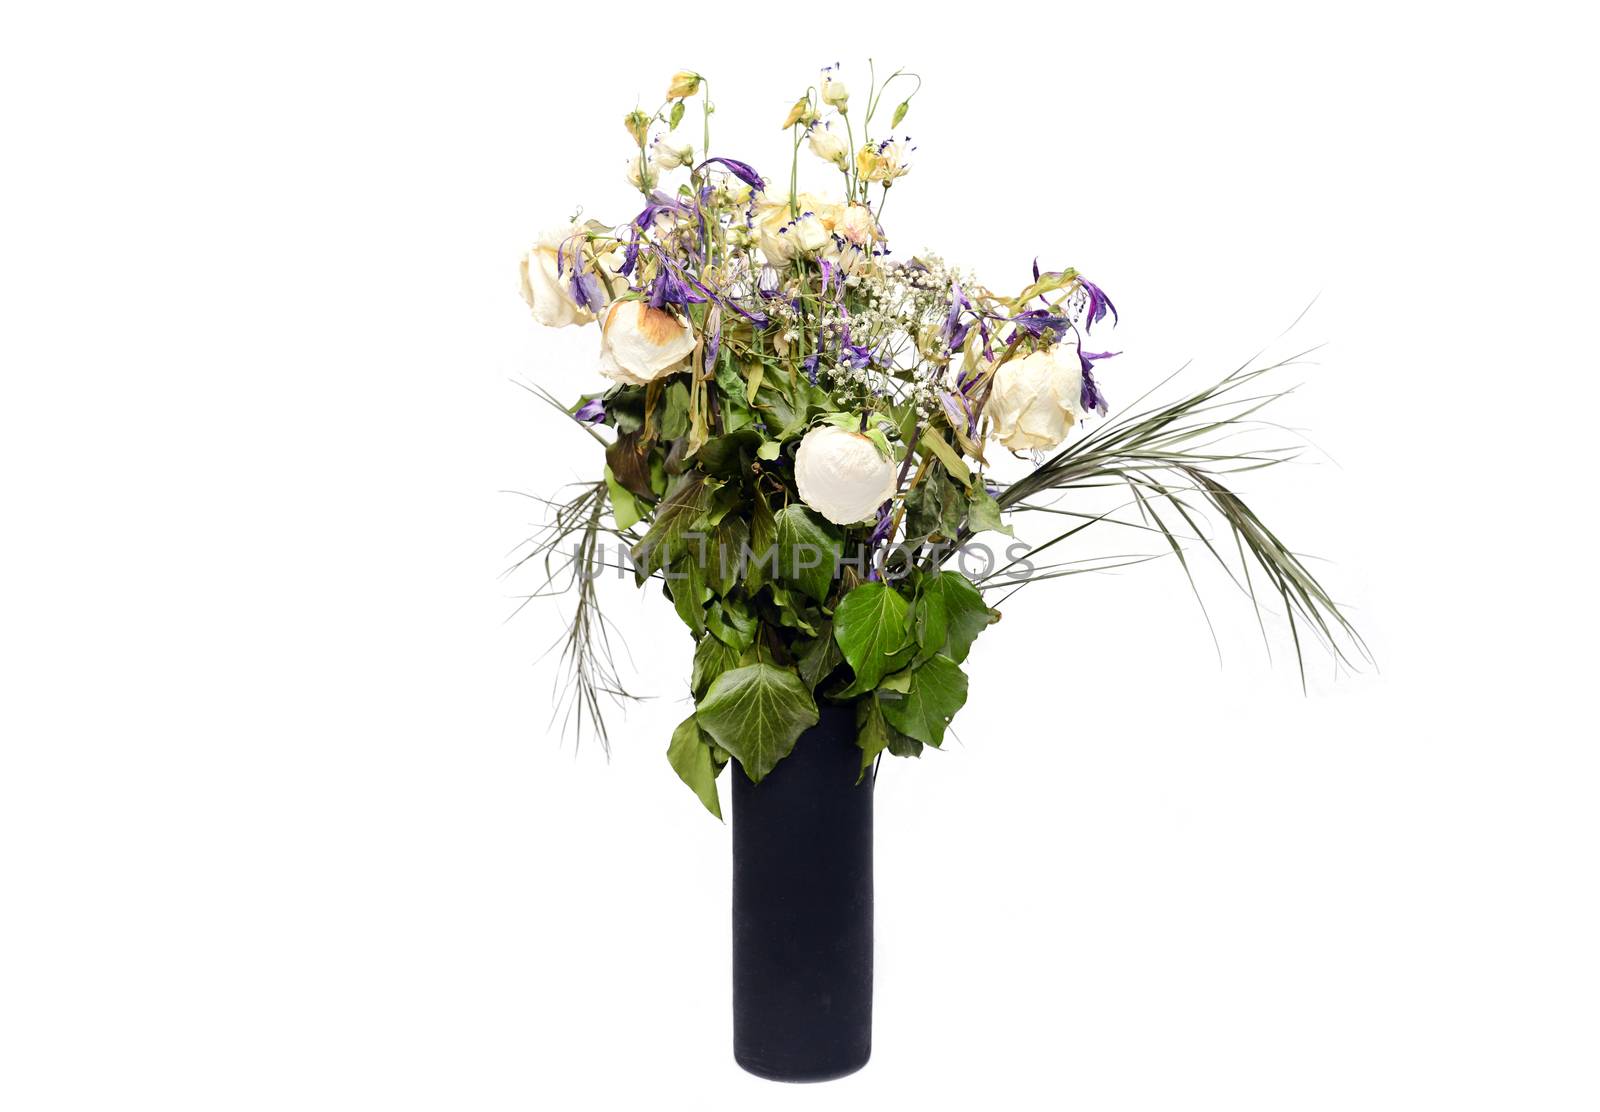 Dead flowers in black vase over white background